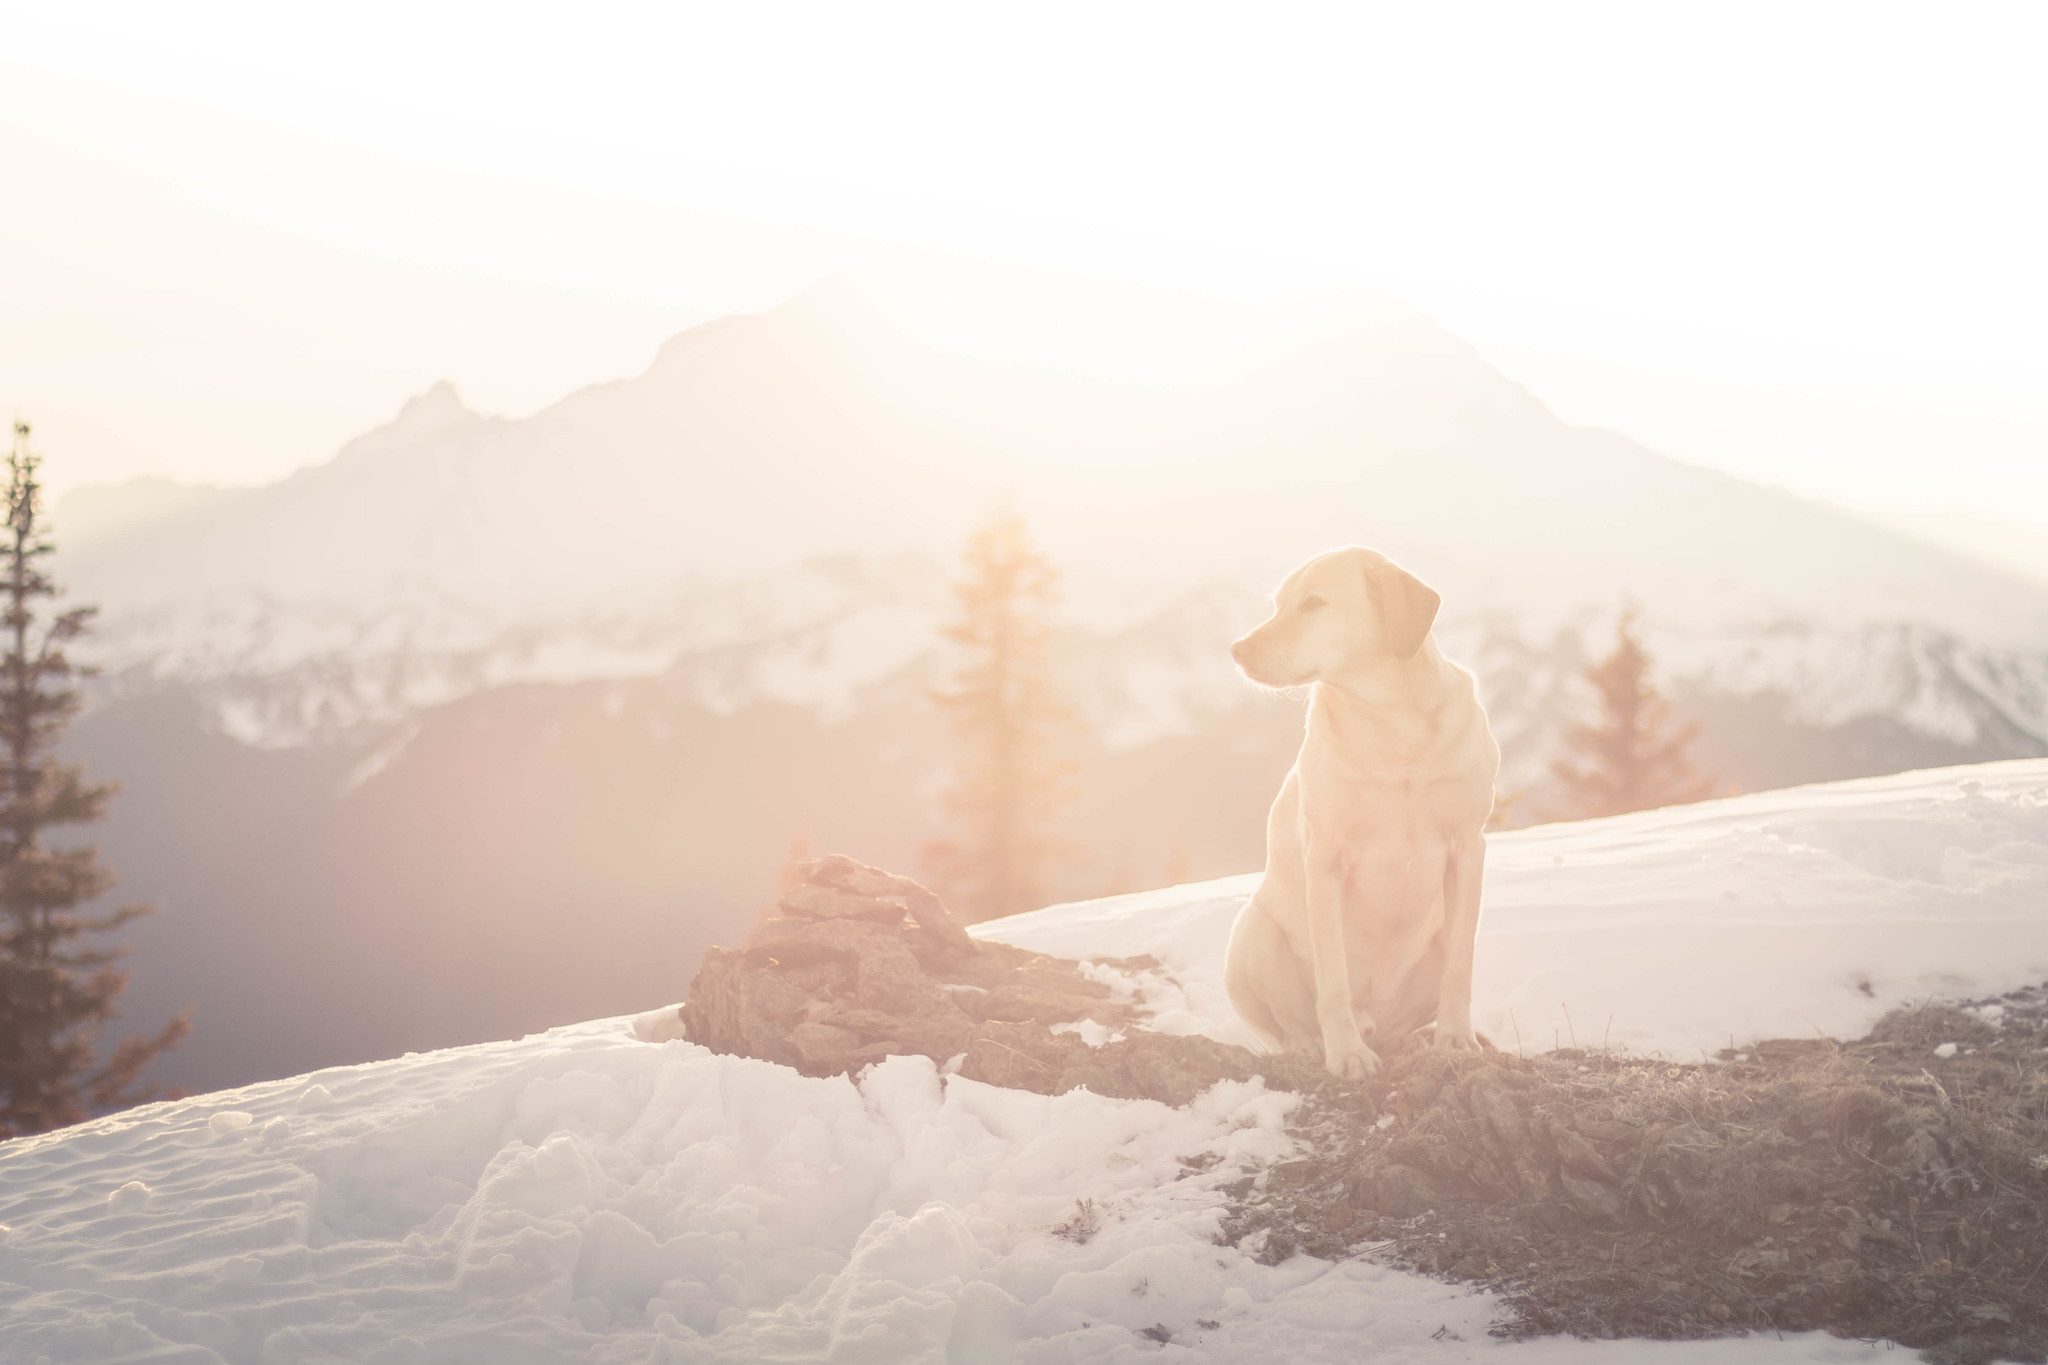 Summit dogs on Mutton Mountain